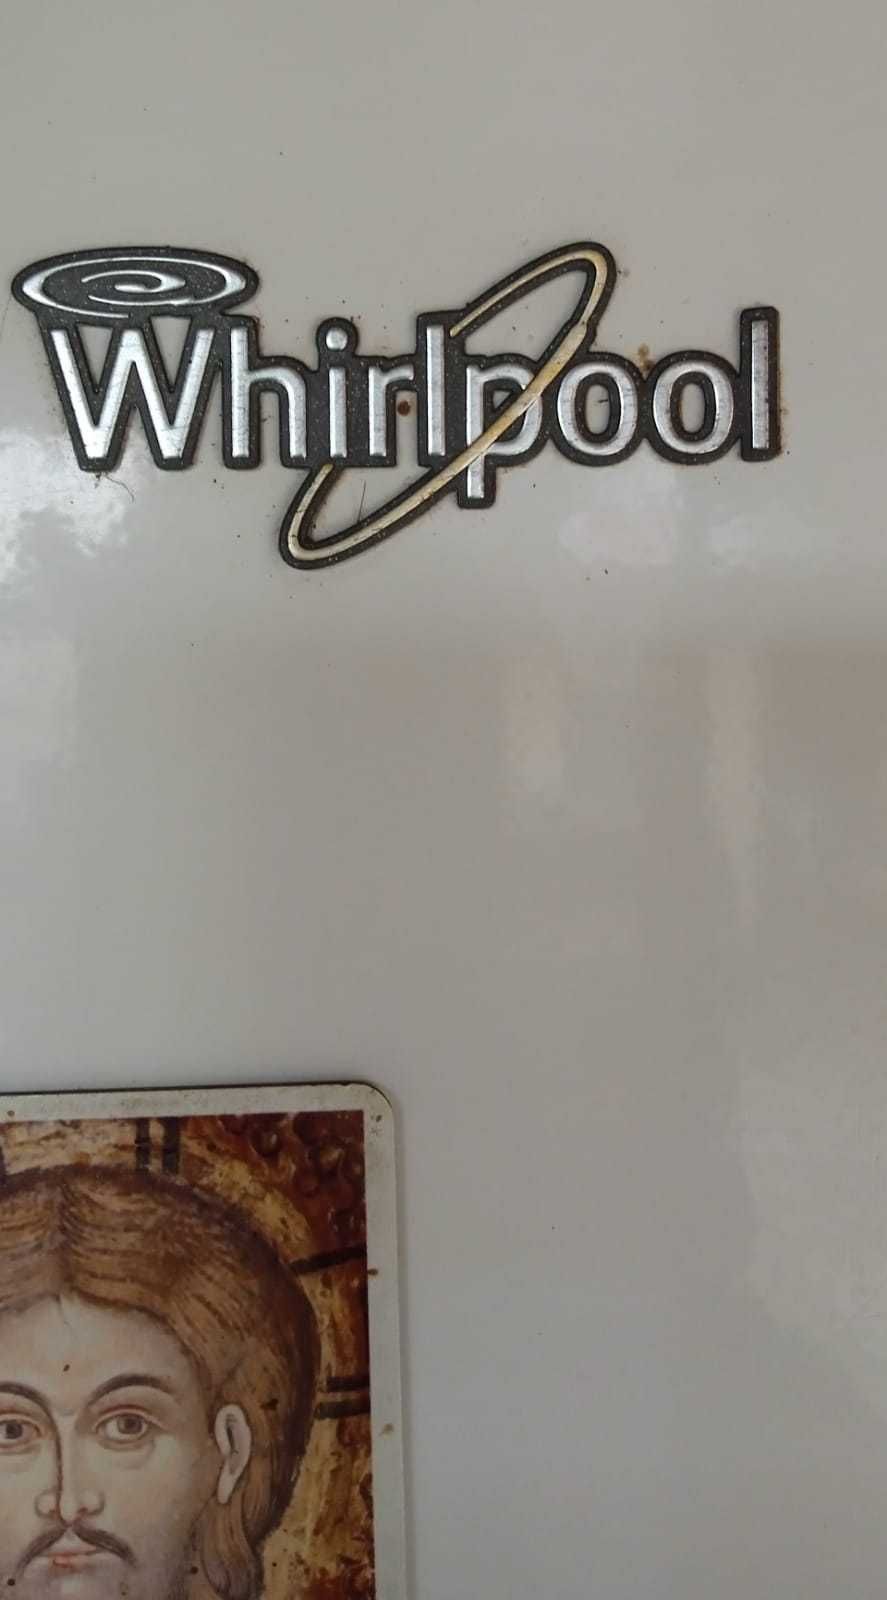 Combina frigorifica WhIrlpool cu putere mare de inghetare